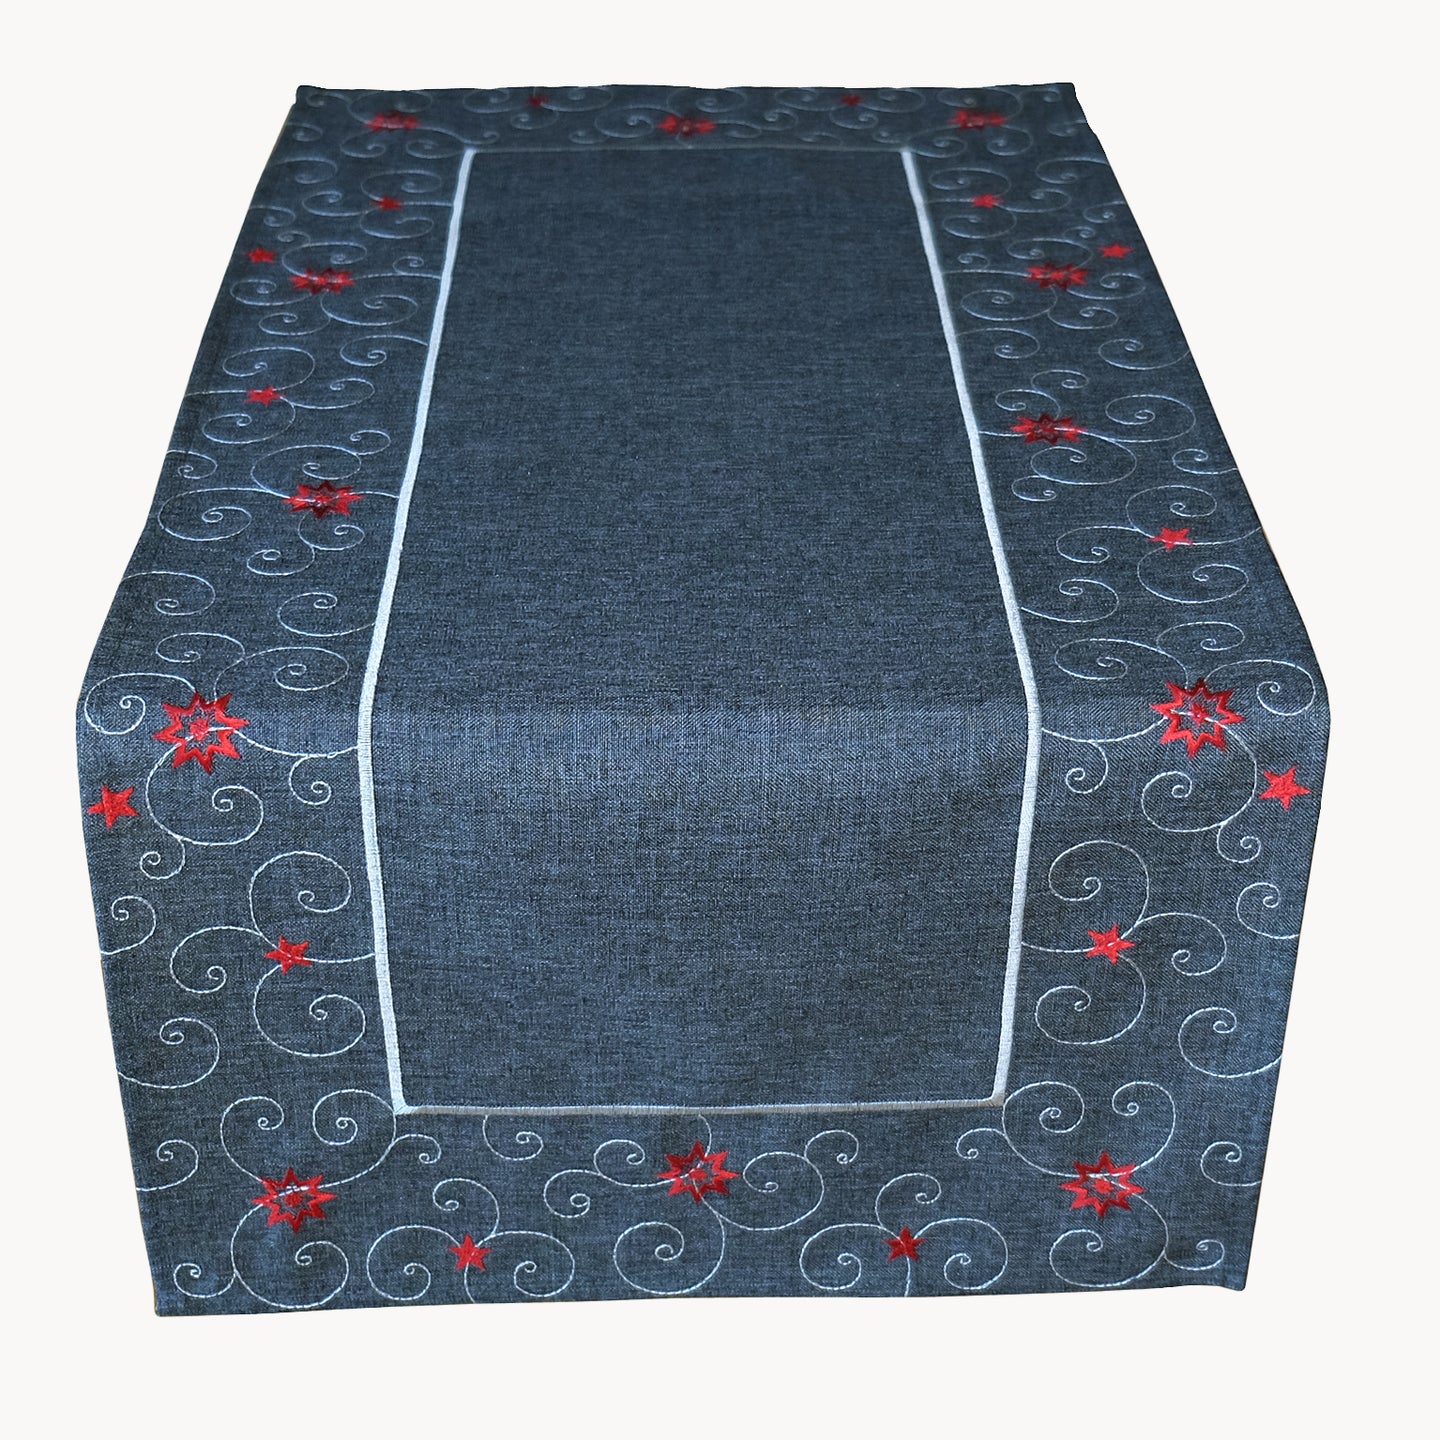 Tischläufer 40x85 cm WEIHNACHTSMOTIVE in anthrazit mit bezaubernder Stickerei in grau silber rot - ein Eyecatcher in Herbst Winter Weihnachten